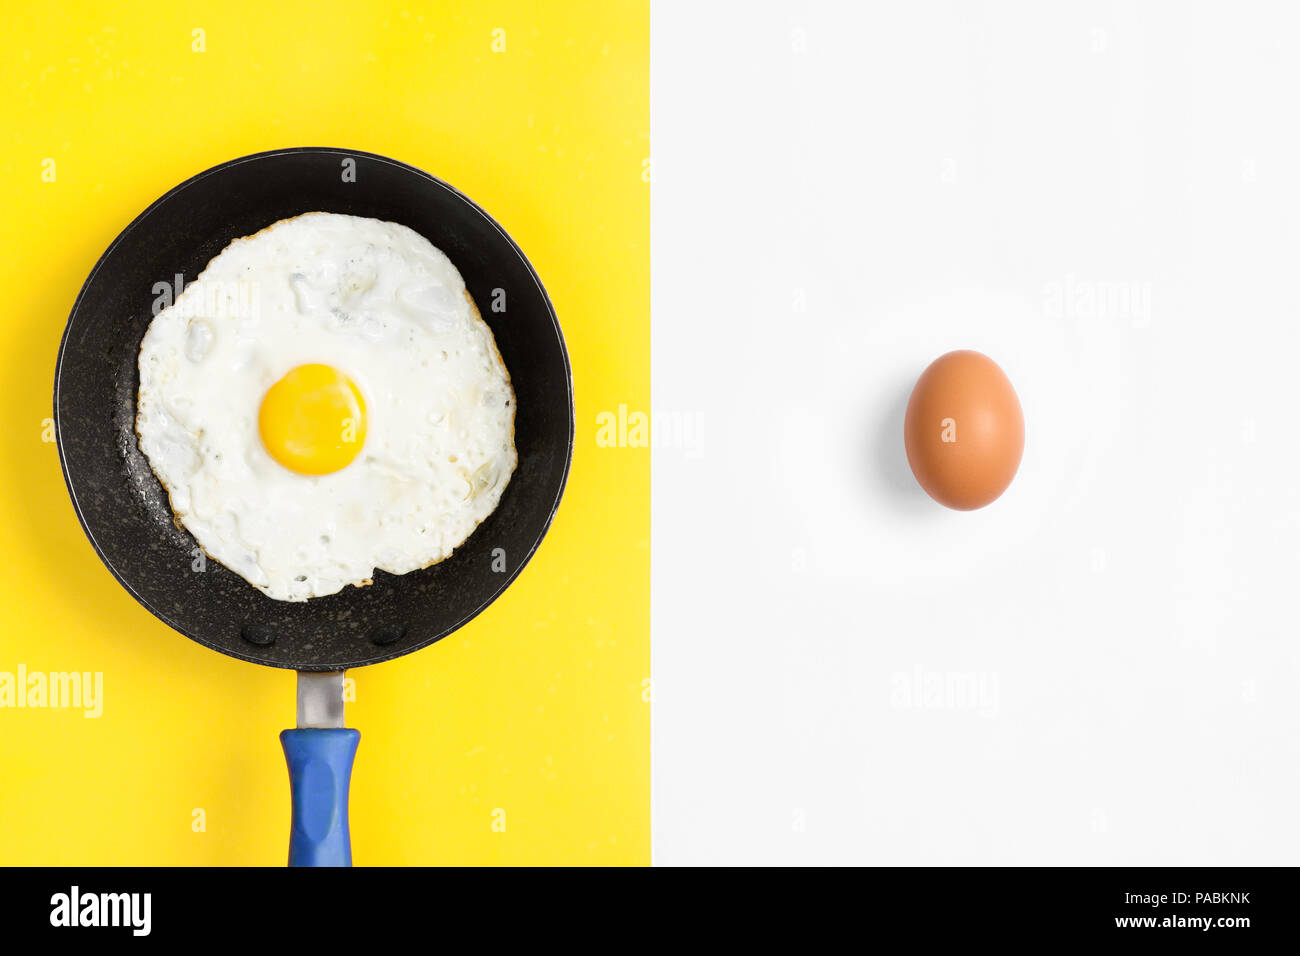 Split color plano imagen laicos con huevos crudos y cocidos. Foto de stock